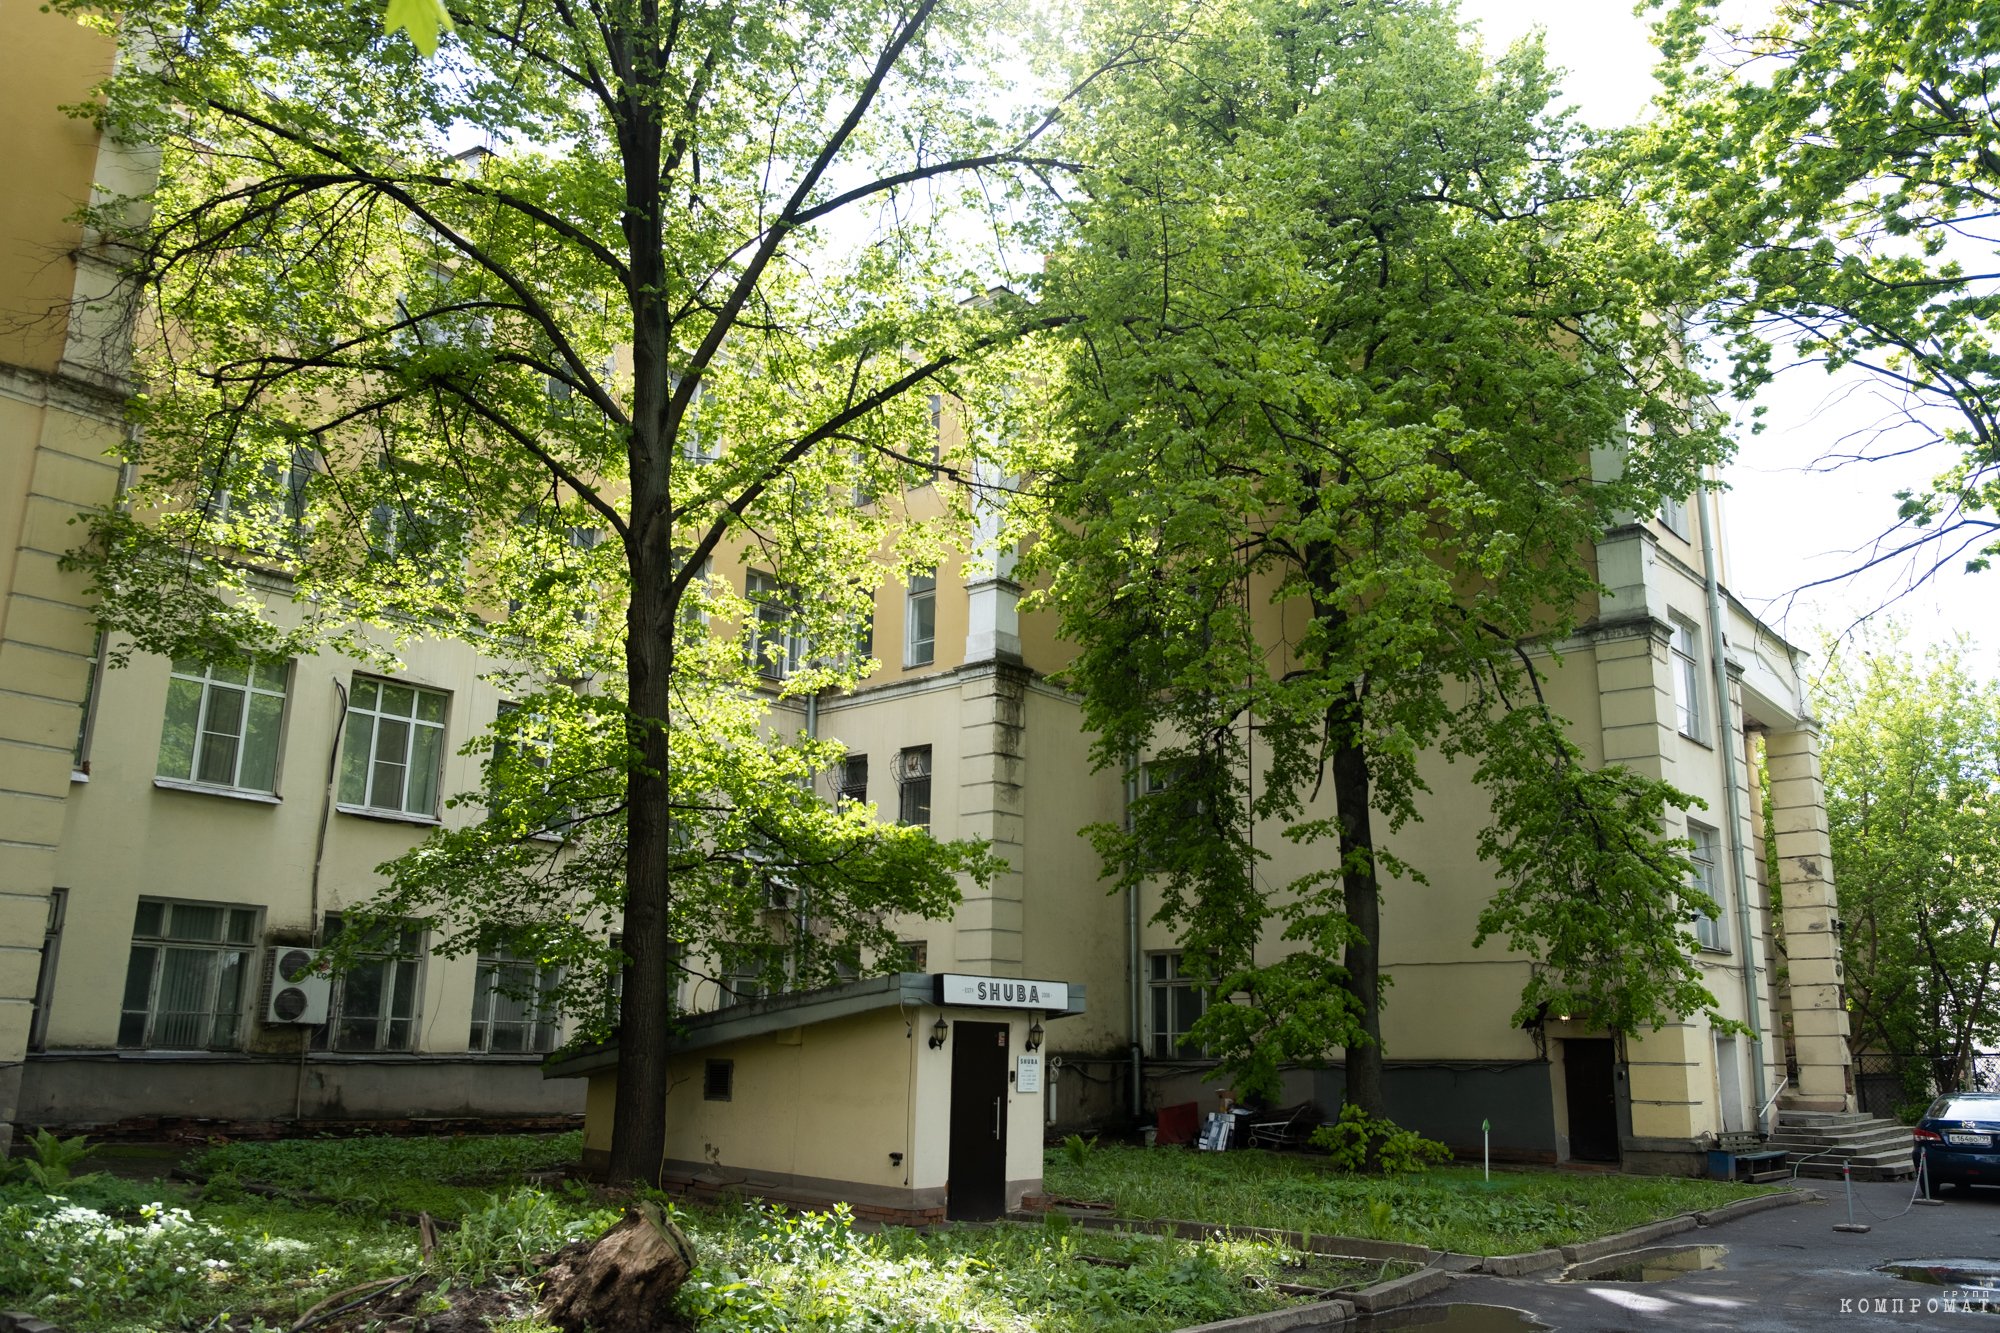 Дом, который структуры Руслана Горюхина намерены перестроить, находится не в лучшем состоянии